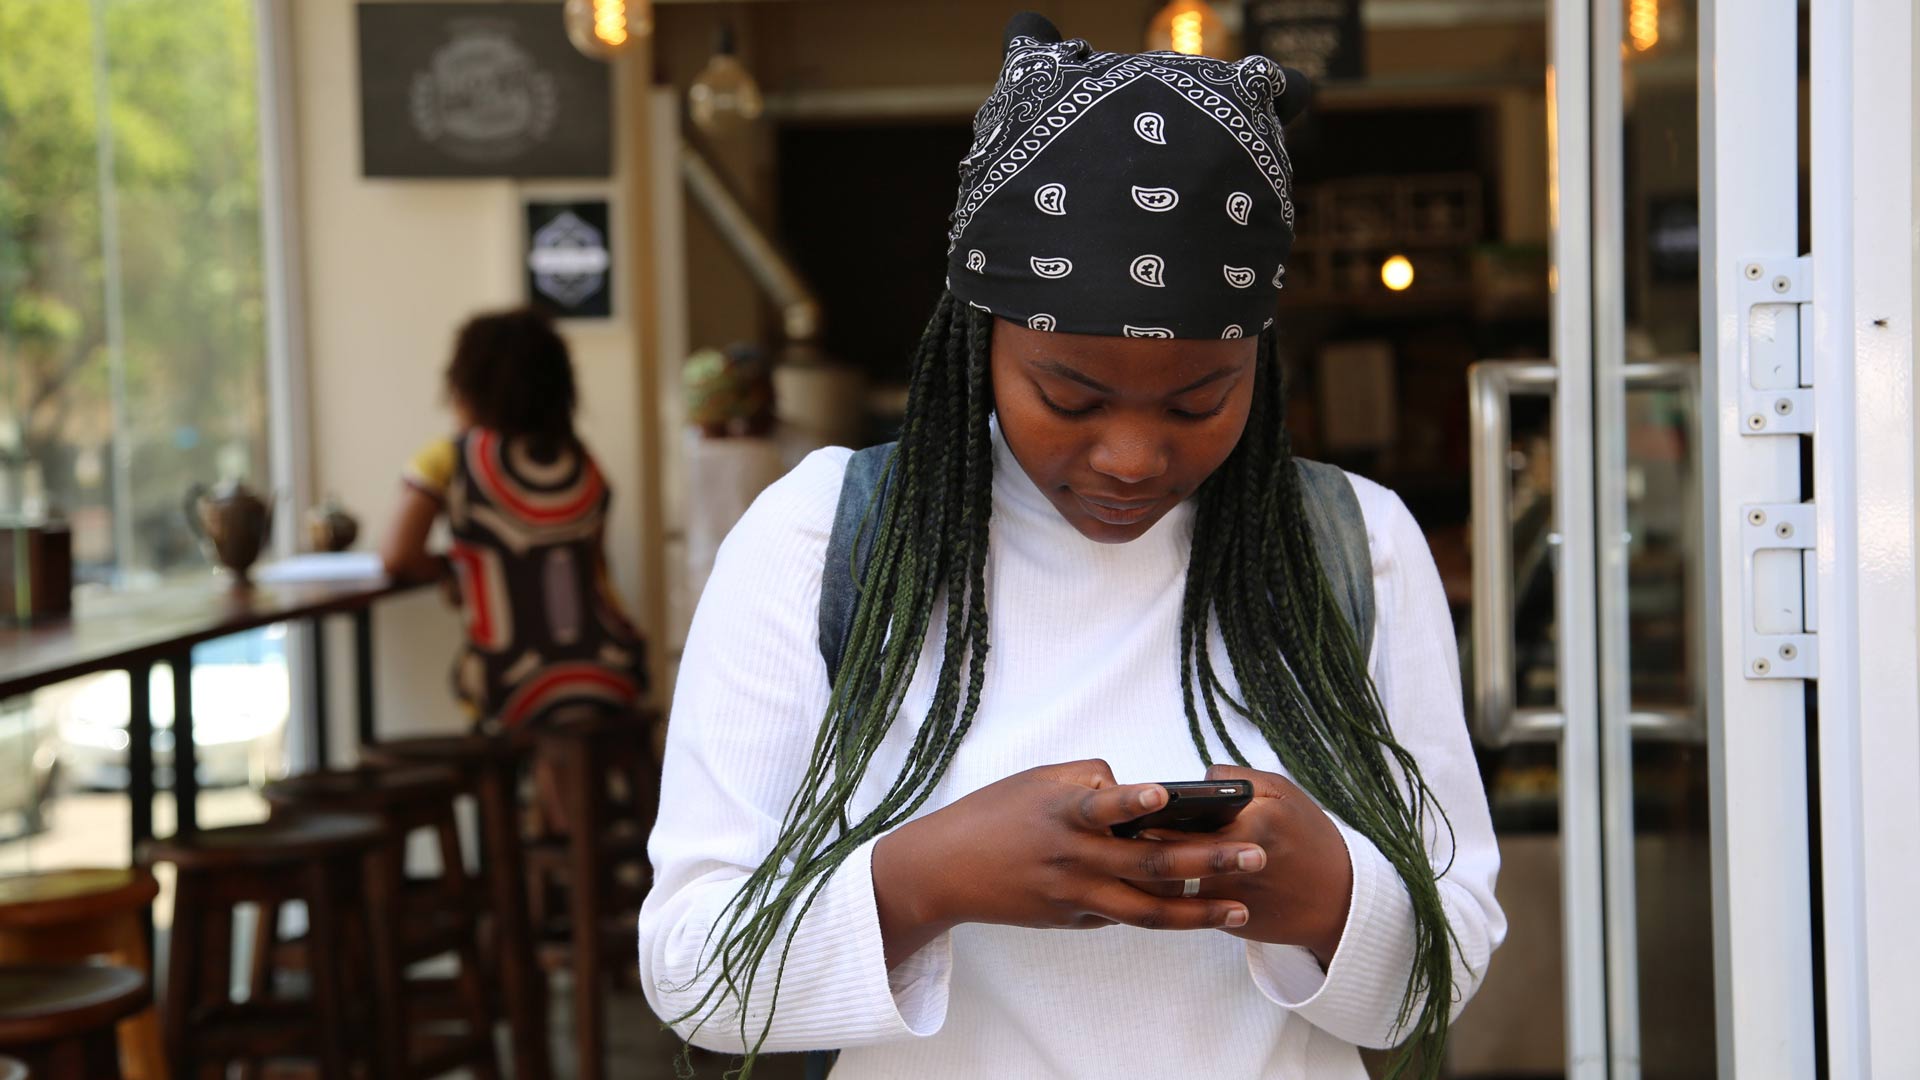 No, los jóvenes no están regalando su intimidad en las redes sociales